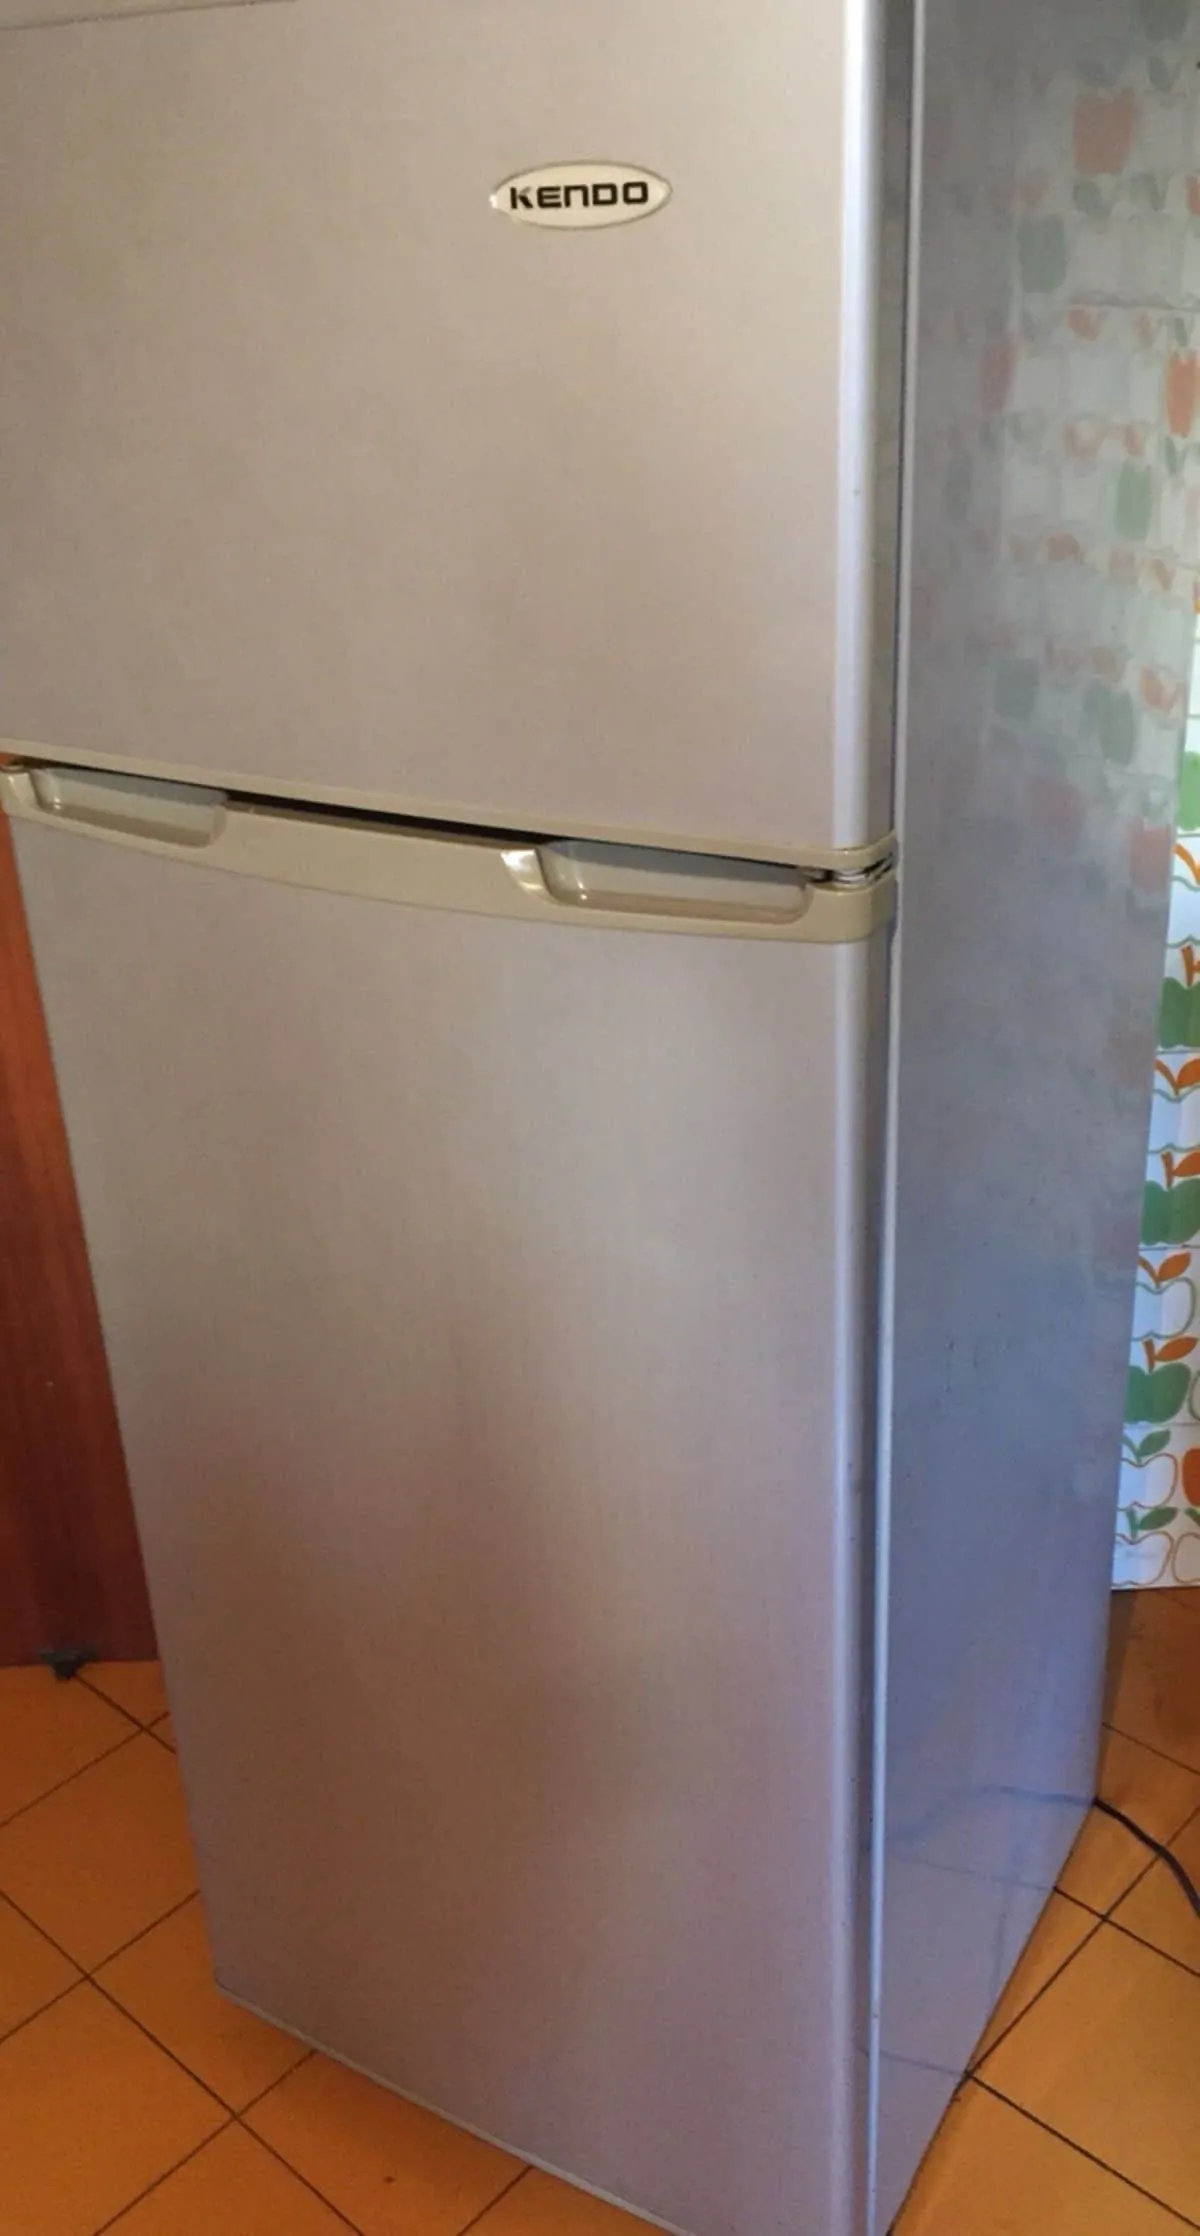 frigorifero kendo